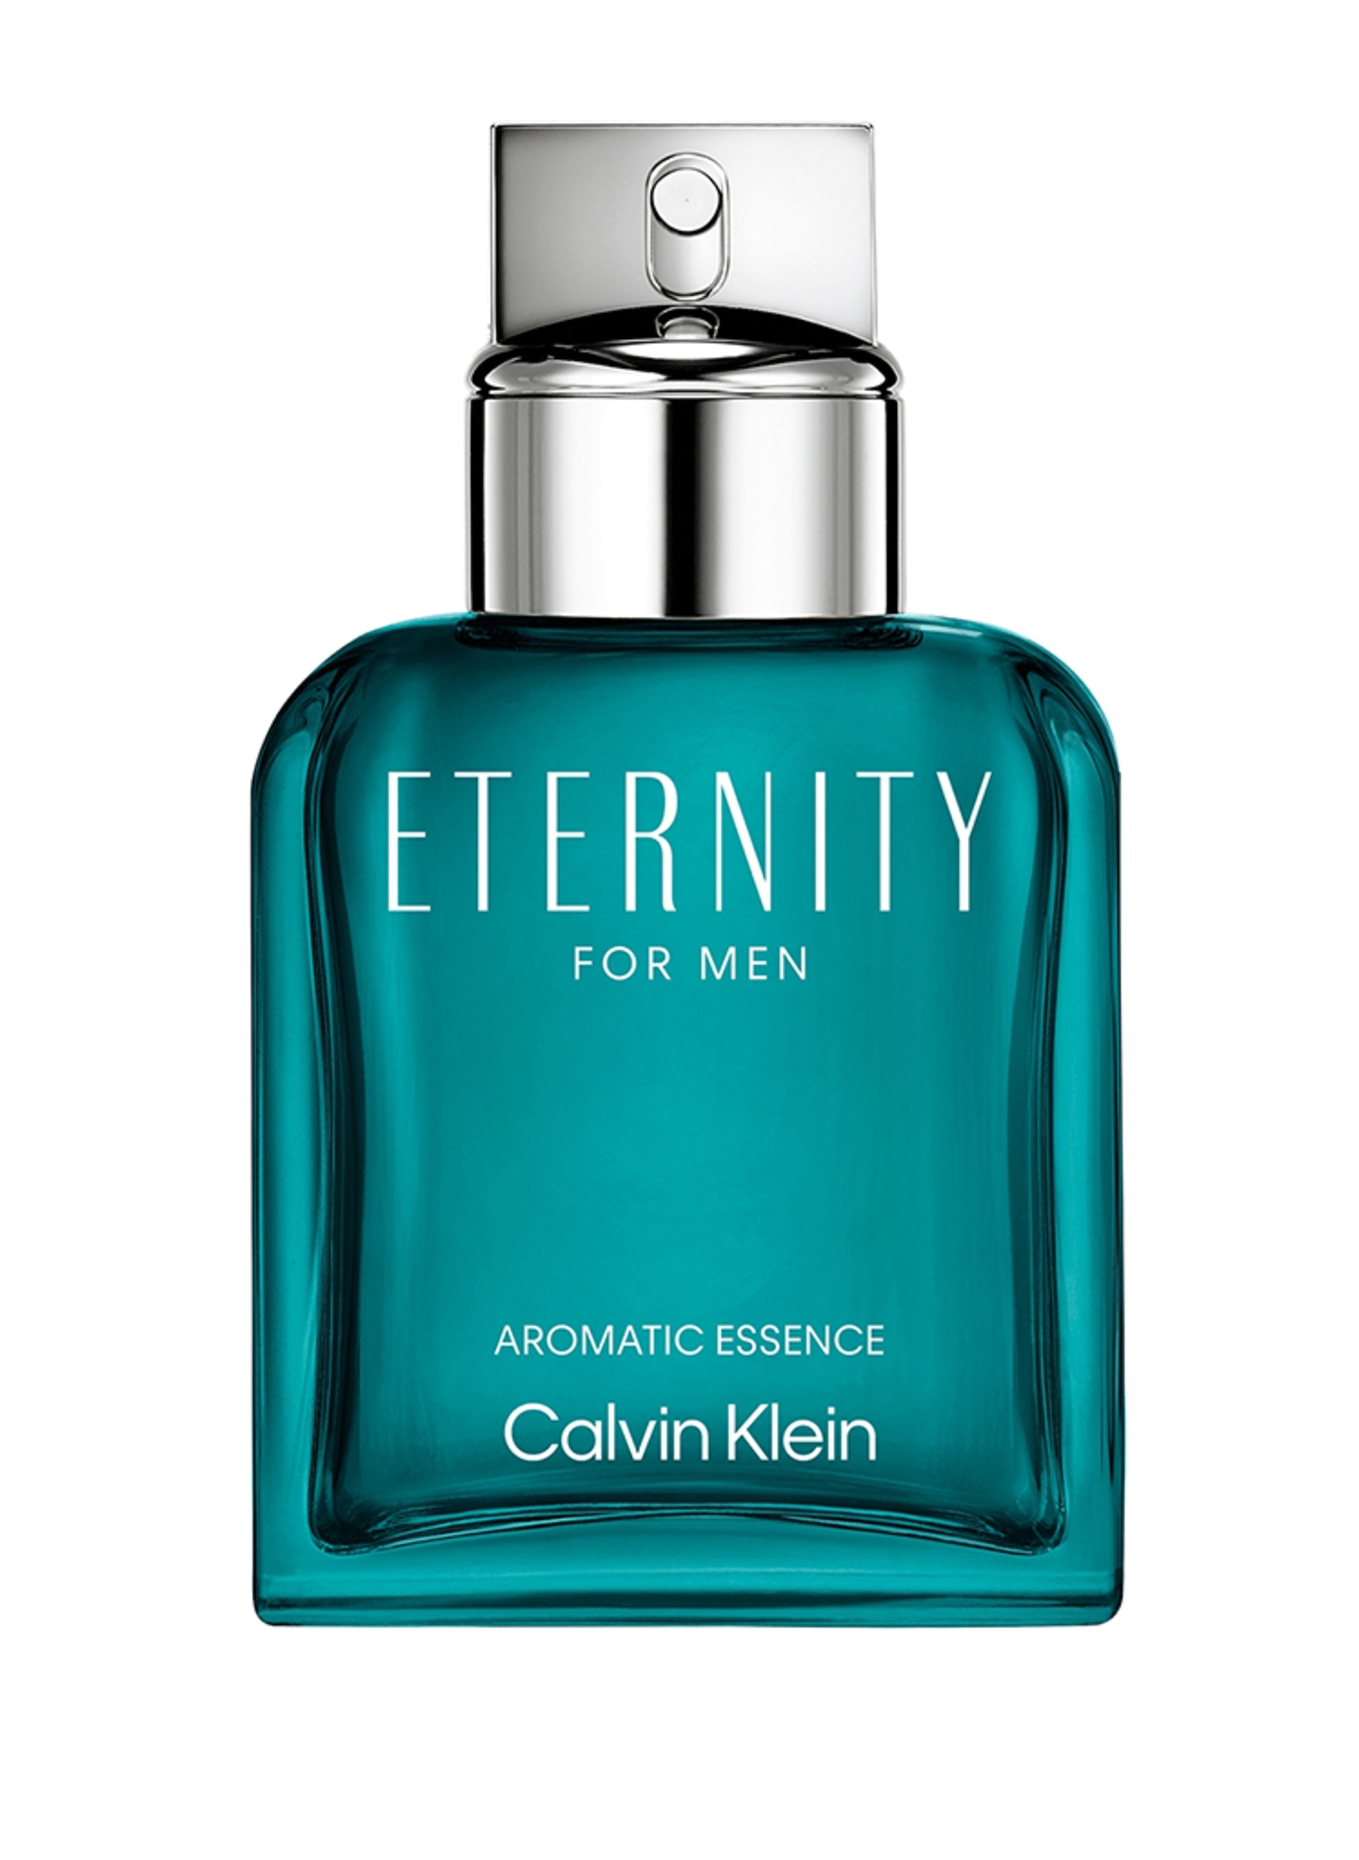 Calvin Klein ETERNITY AROMATIC ESSENCE FOR MEN (Obrazek 1)